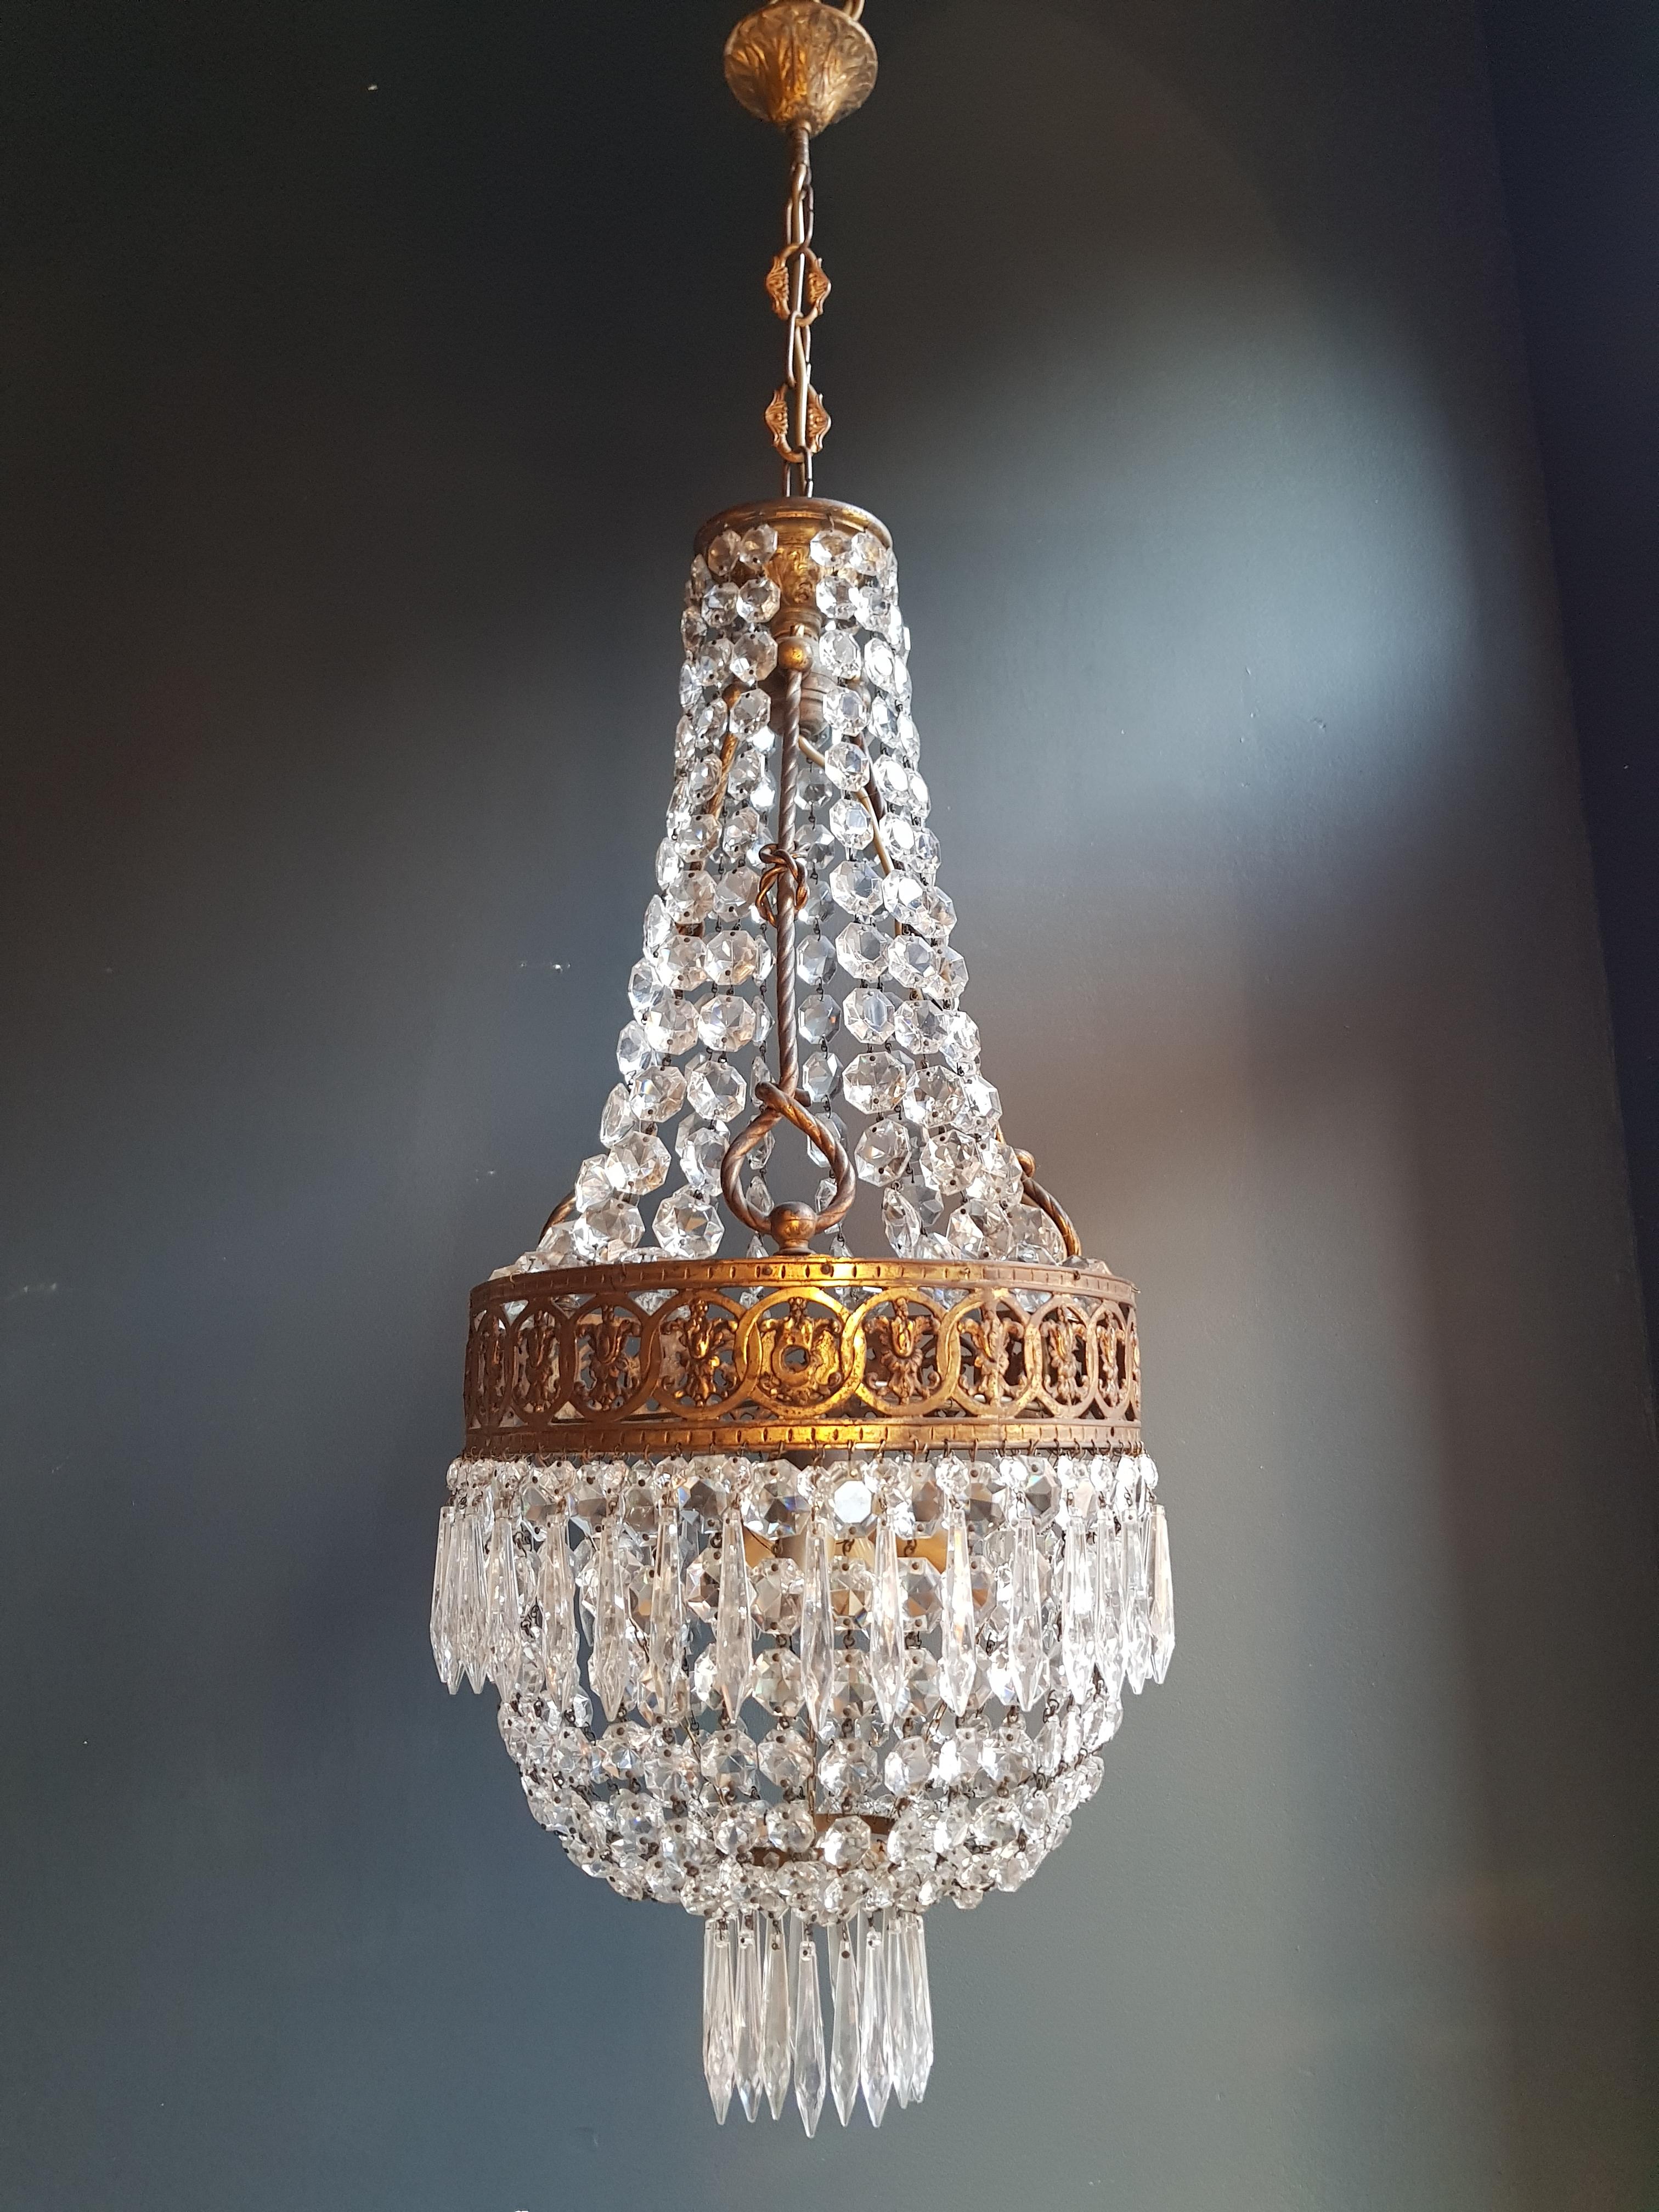 Basket Chandelier Brass Empire Crystal Lustre Ceiling Antique Art Nouveau For Sale 2